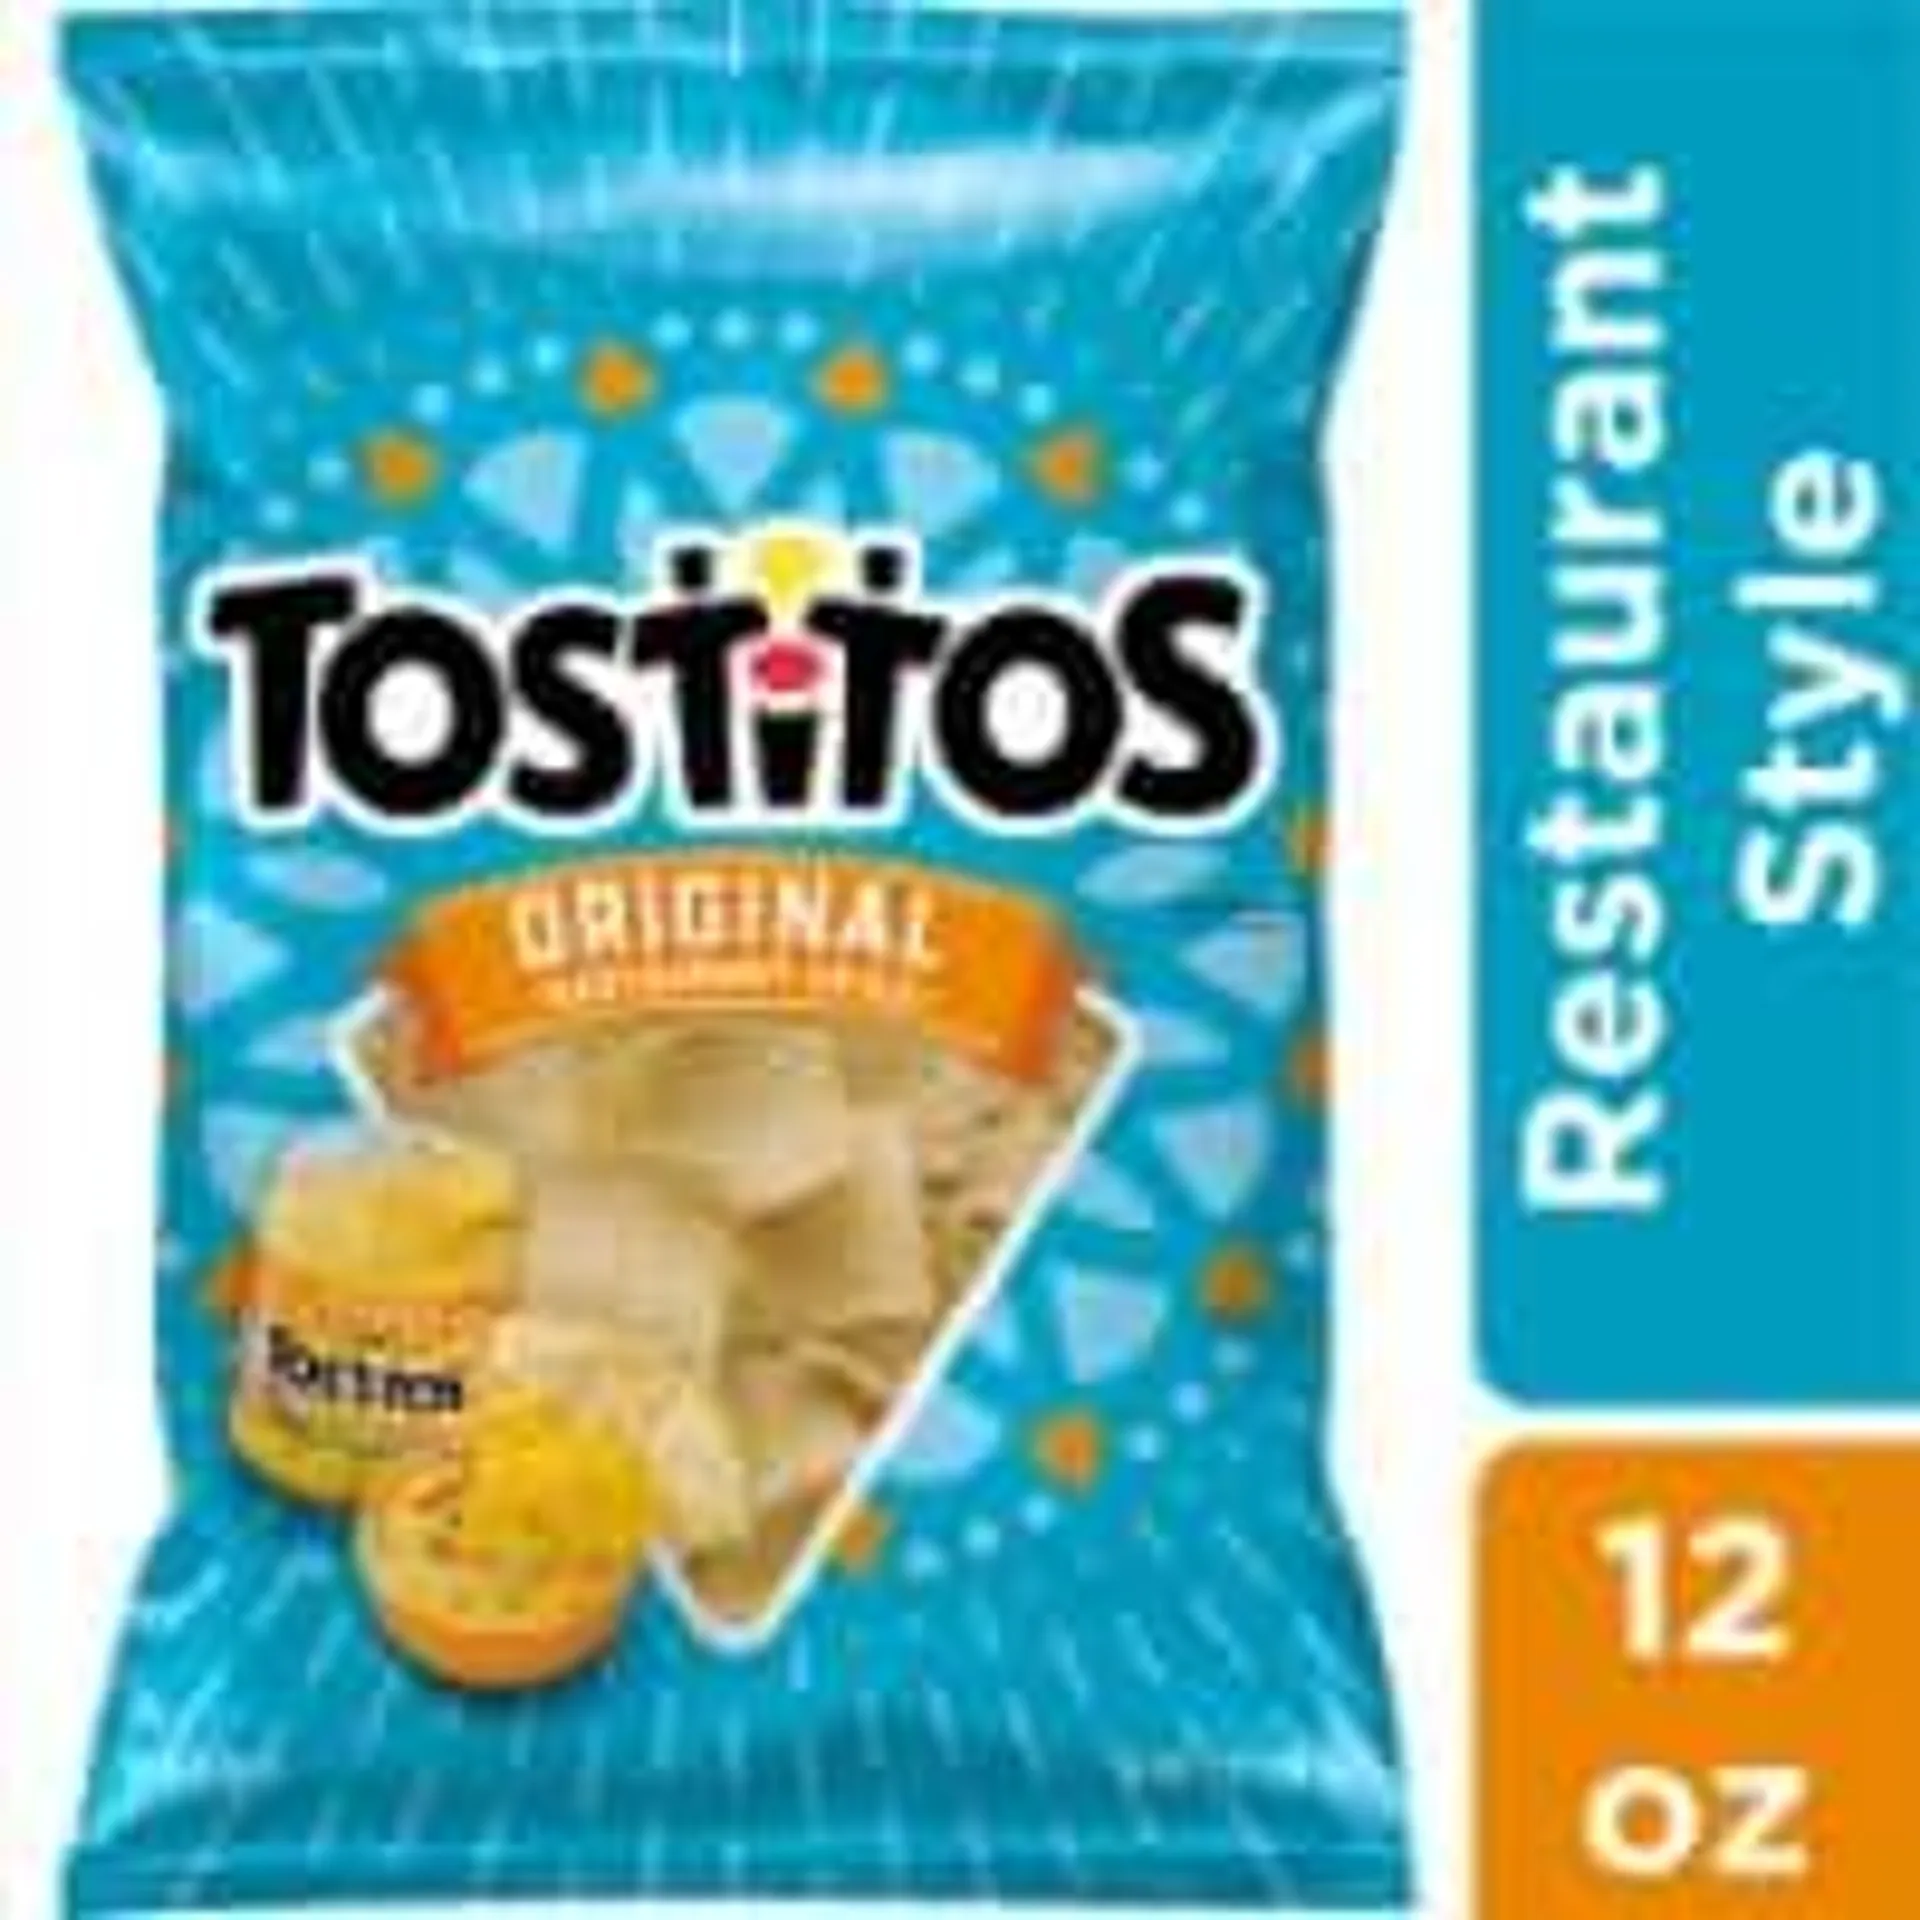 Tostitos® Original Restaurant Style Tortilla Chips